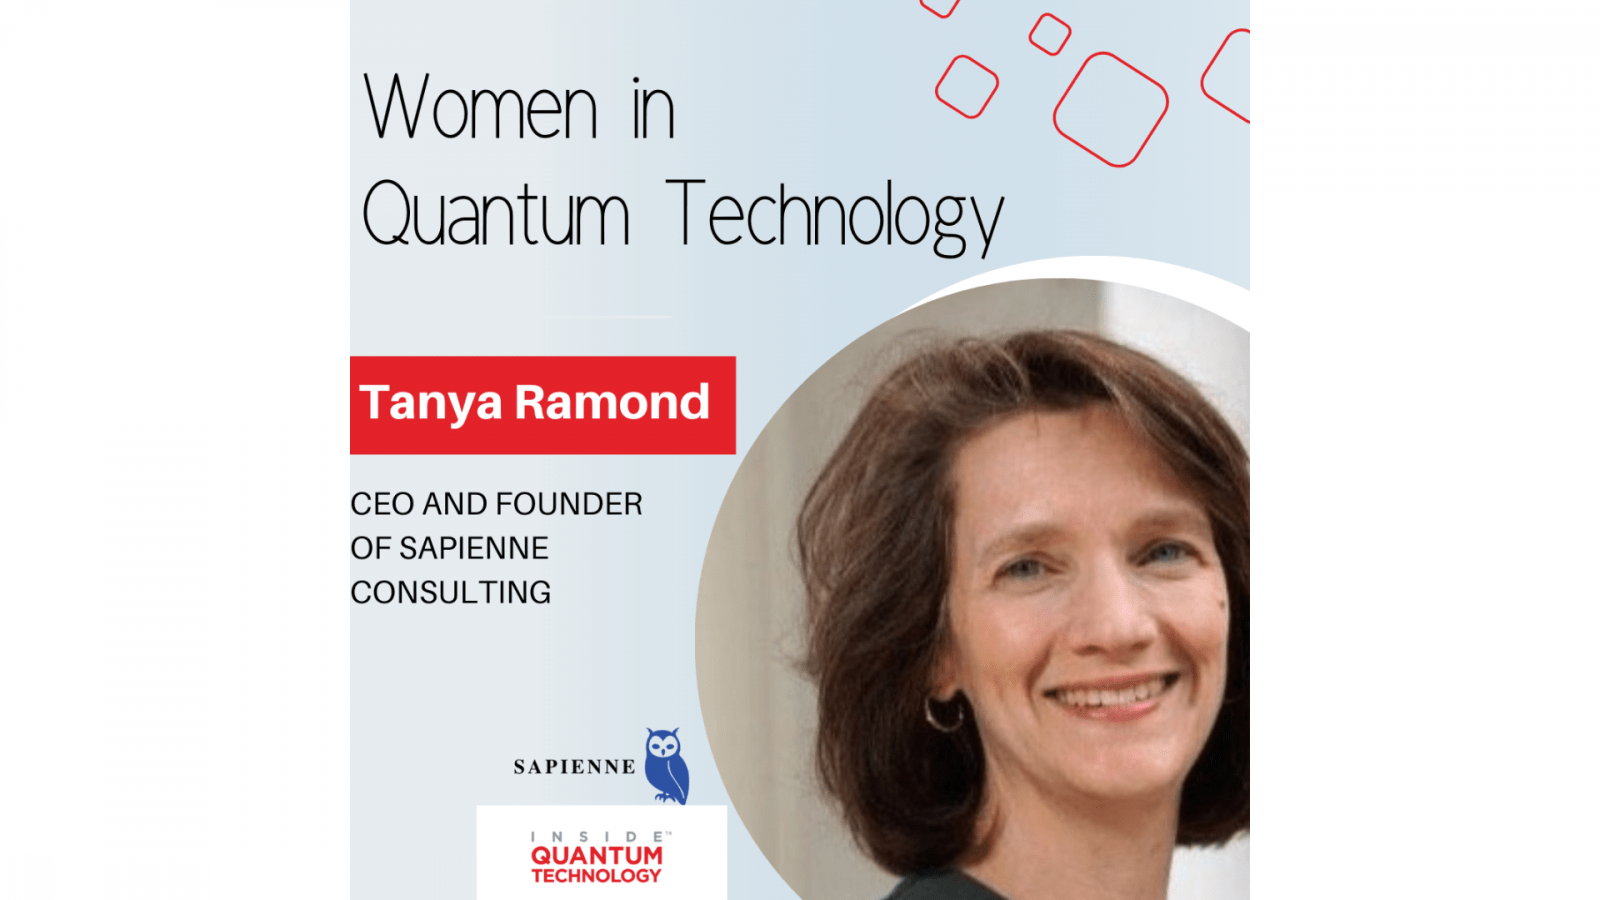 Tanya Ramond, PDG et fondatrice de Sapienne Consulting, revient sur son histoire et son parcours dans l'industrie quantique.